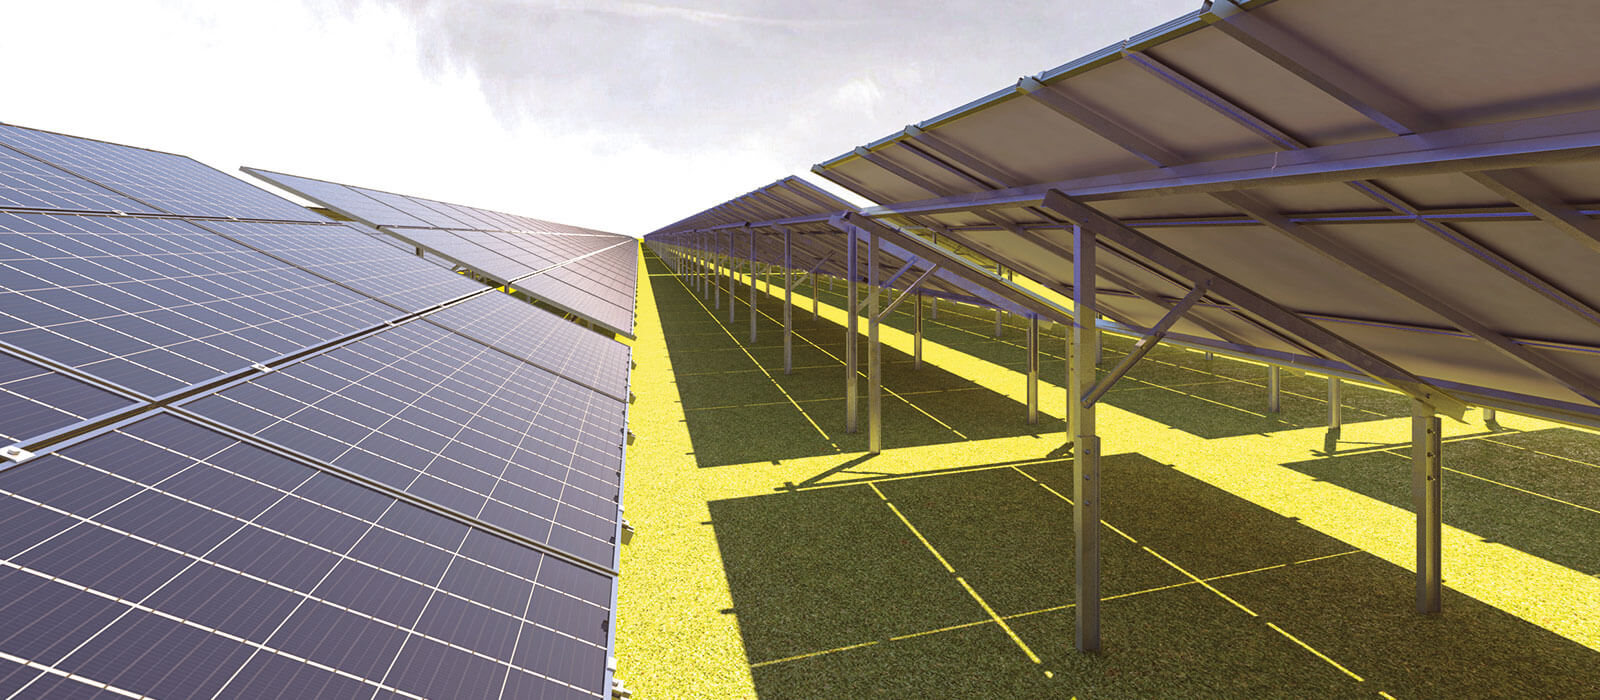 Strutture per impianti fotovoltaici a terra